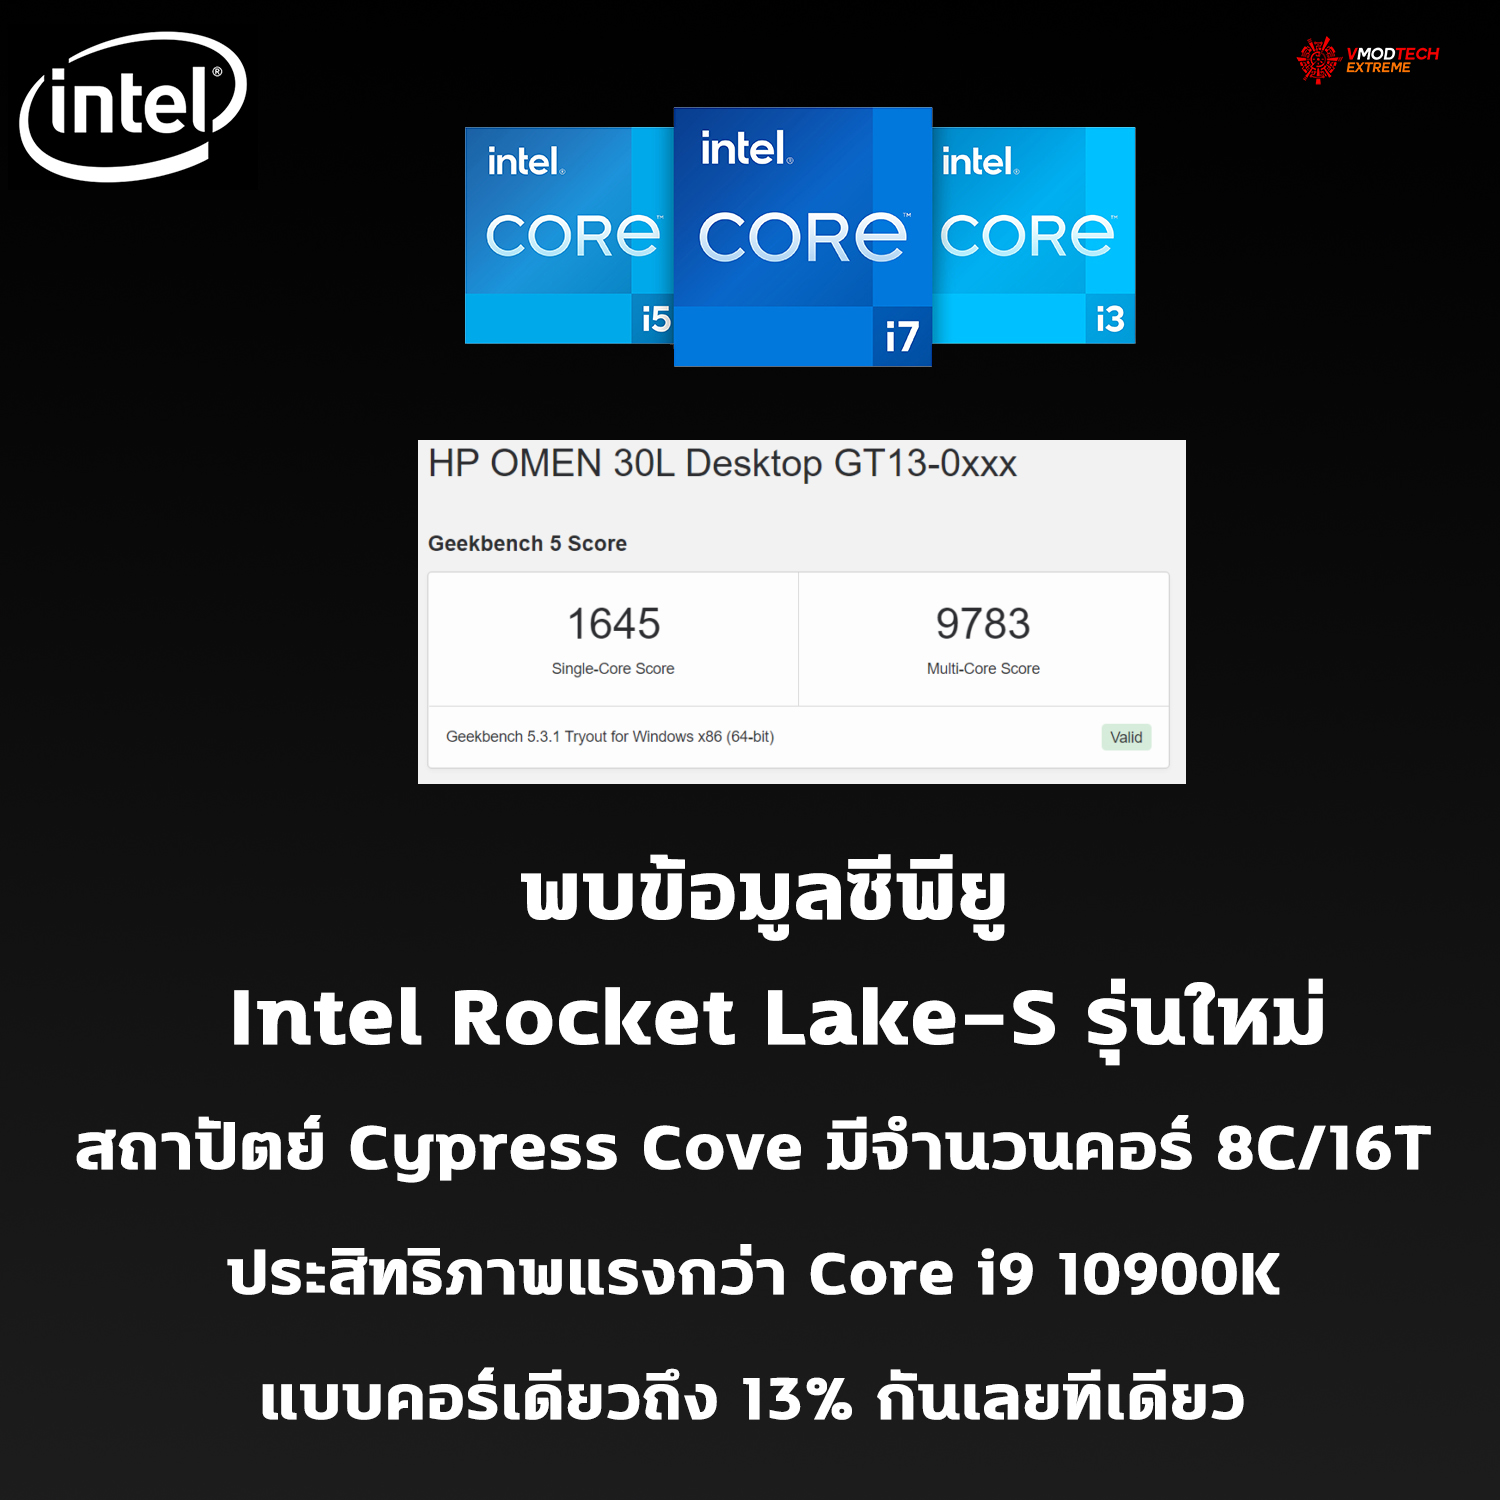 พบข้อมูลซีพียู Intel Rocket Lake-S รุ่นใหม่มีจำนวนคอร์ 8C/16T ประสิทธิภาพแรงกว่า Core i9 10900K แบบคอร์เดียวถึง 13% กันเลยทีเดียว 